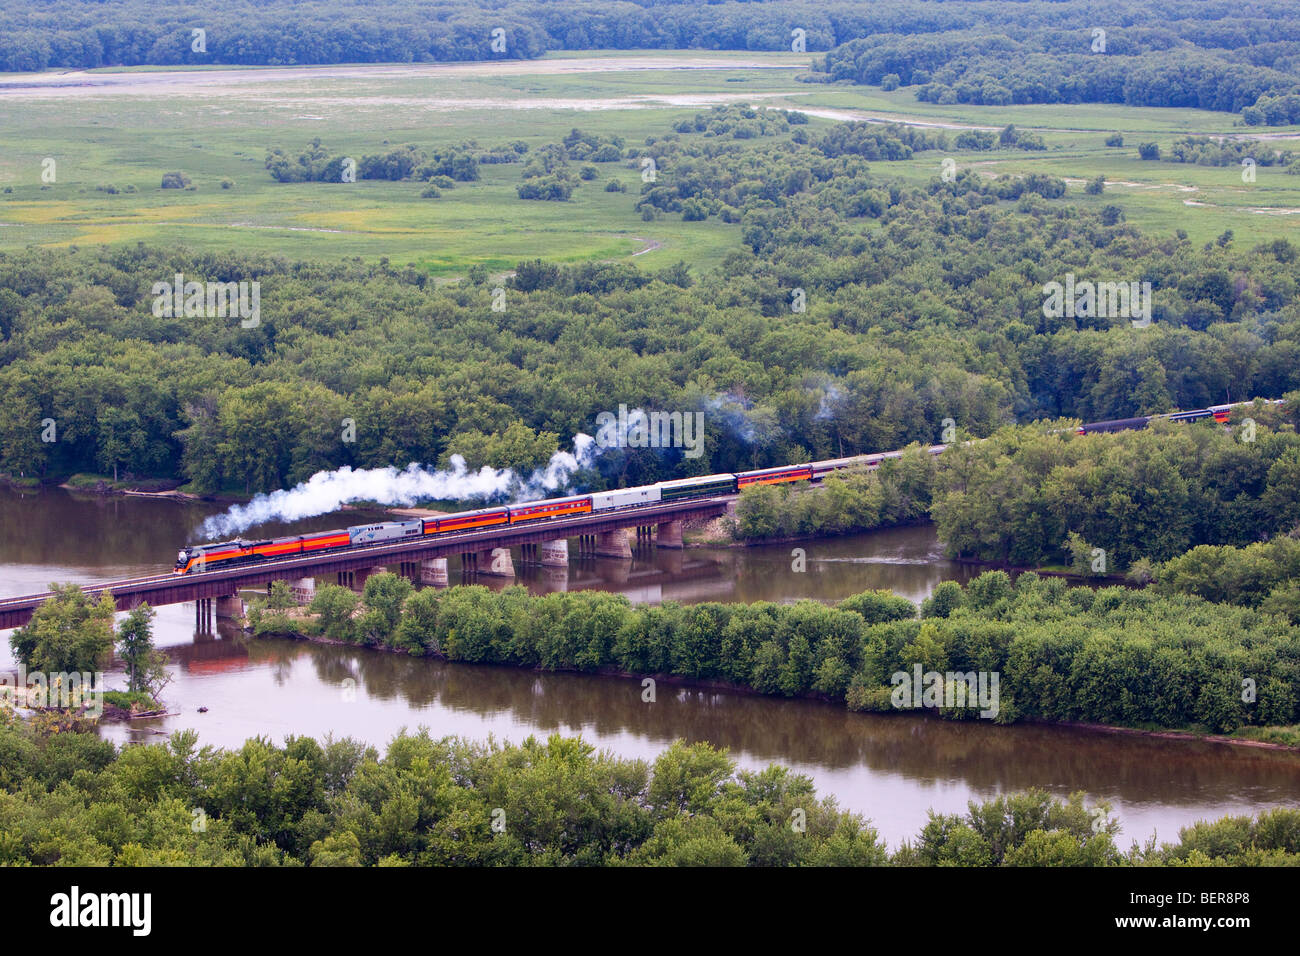 La position de son train sur la rivière Wisconsin, la célèbre locomotive à vapeur 4449 du Pacifique Sud fait de bon temps à Chicago. Banque D'Images